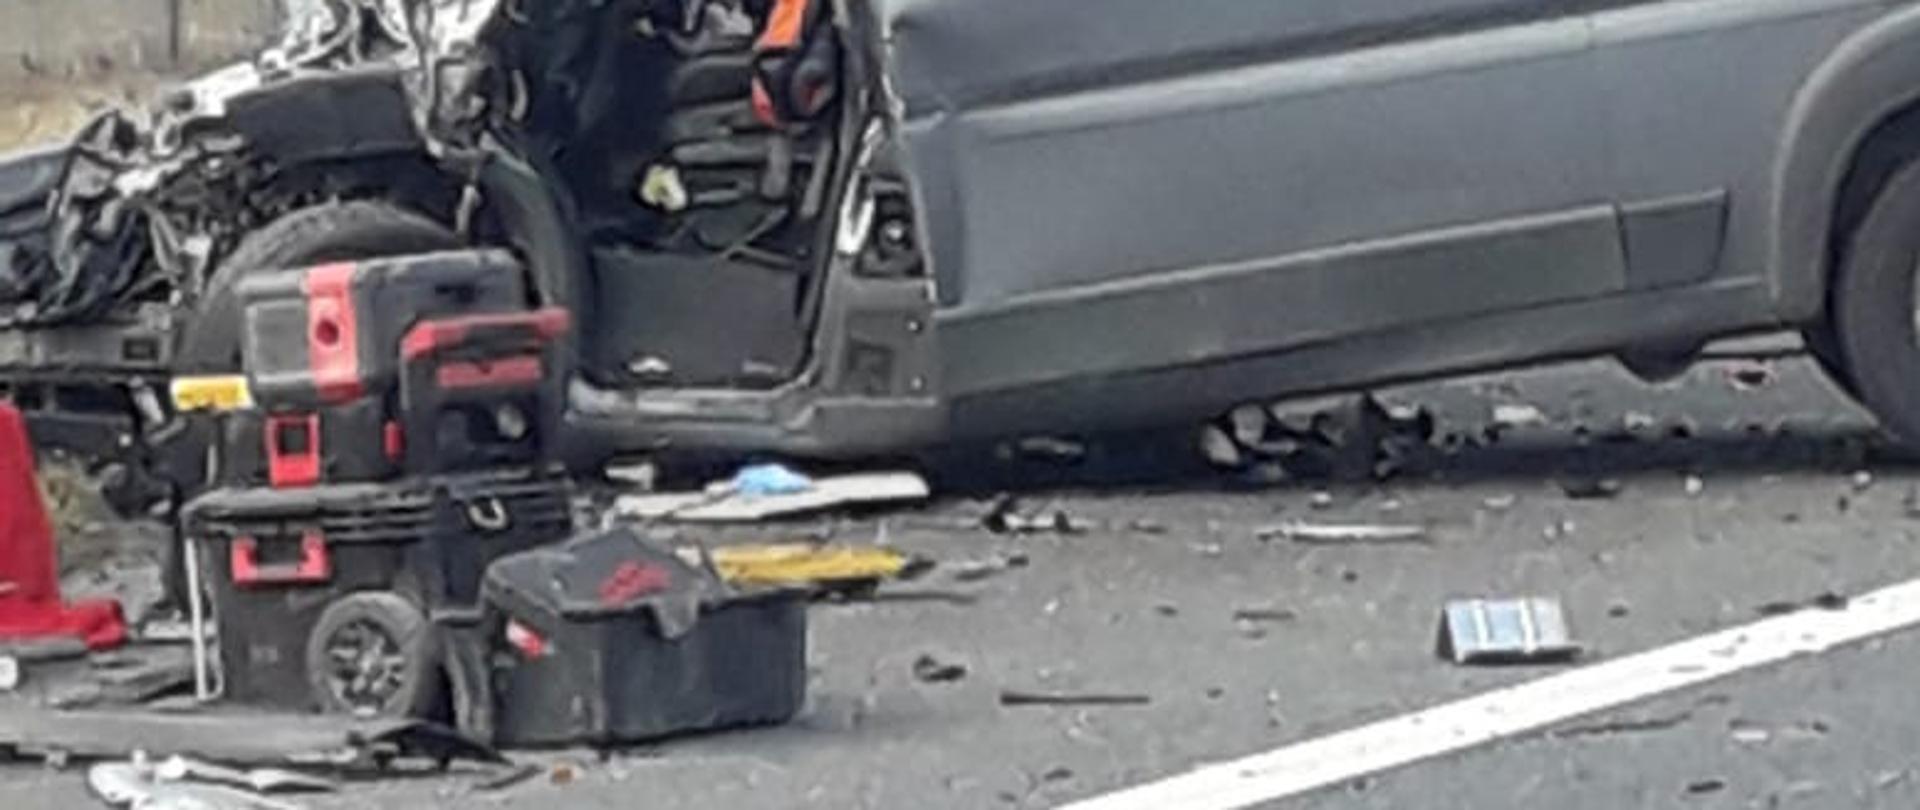 Na zdjęciu widoczny jest rozbity samochód dostawczy koloru szarego obok pojazdu złożone są skrzynki narzędziowe z tyłu pojazdu widoczny wiadukt drogowy. 